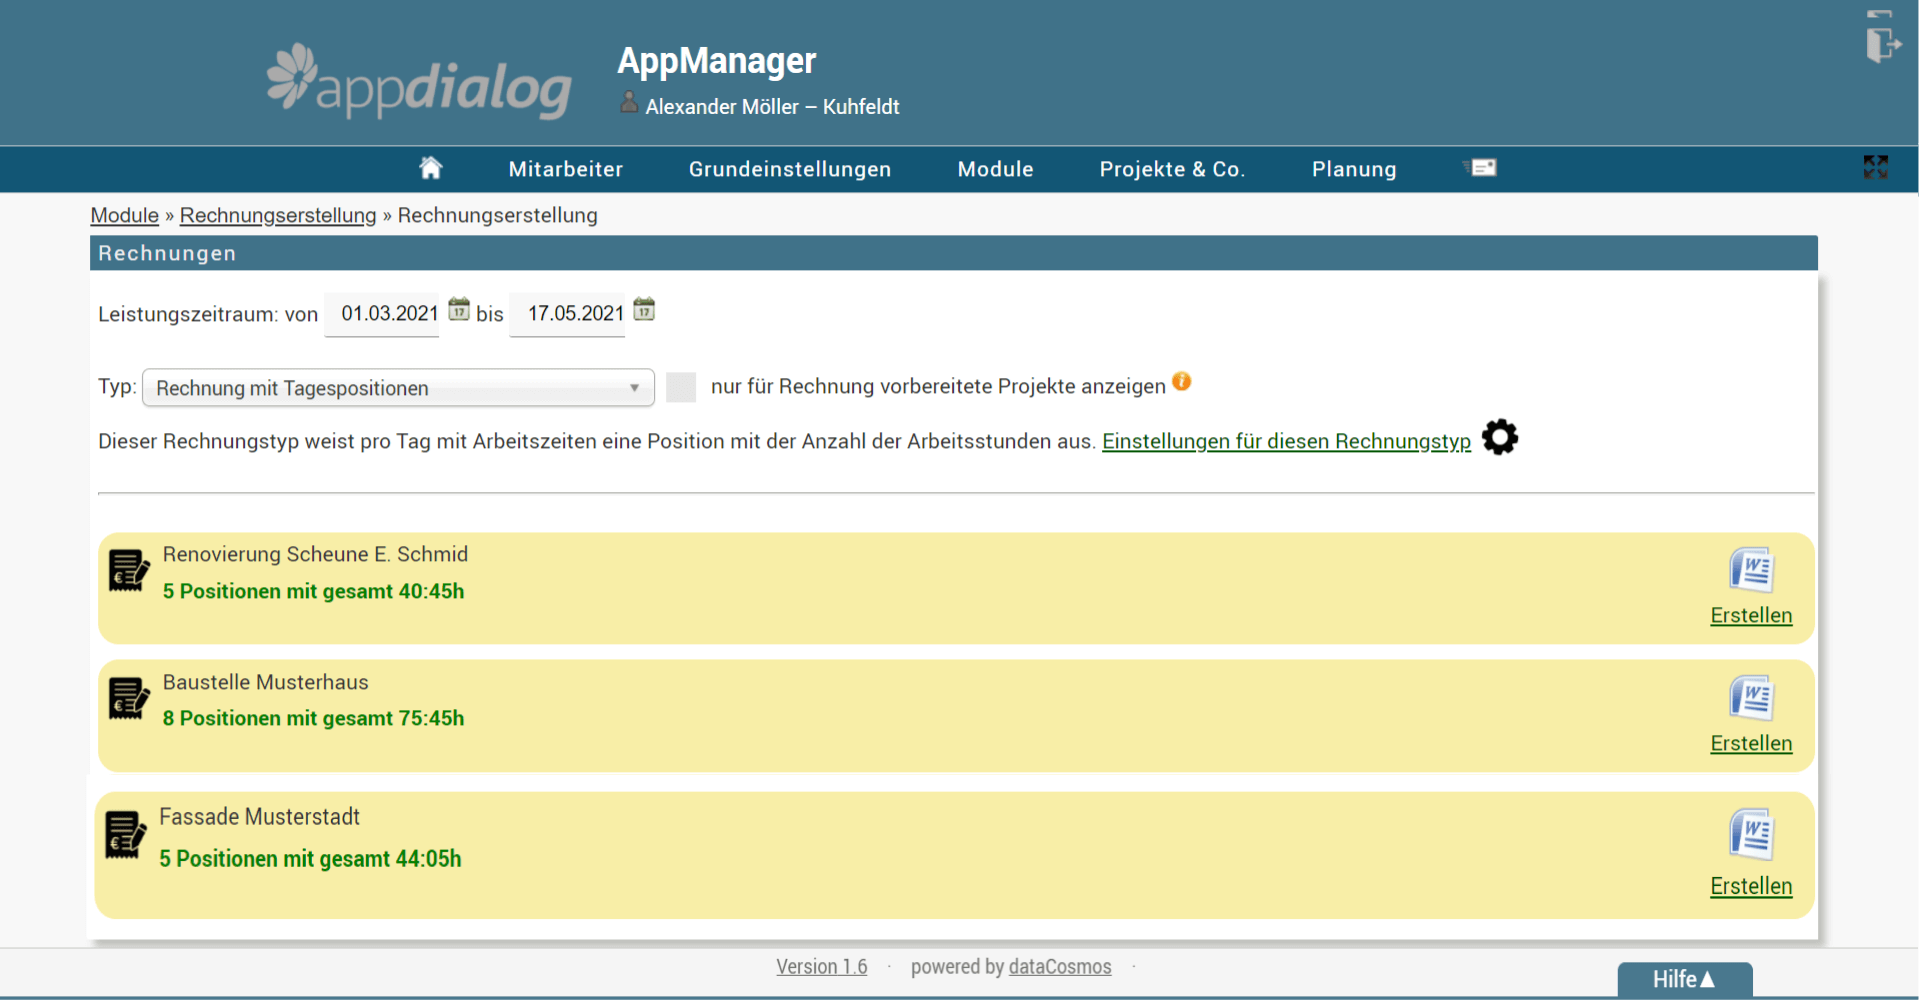 Rechnungserstellung mit der appdialog Mitarbeiter App